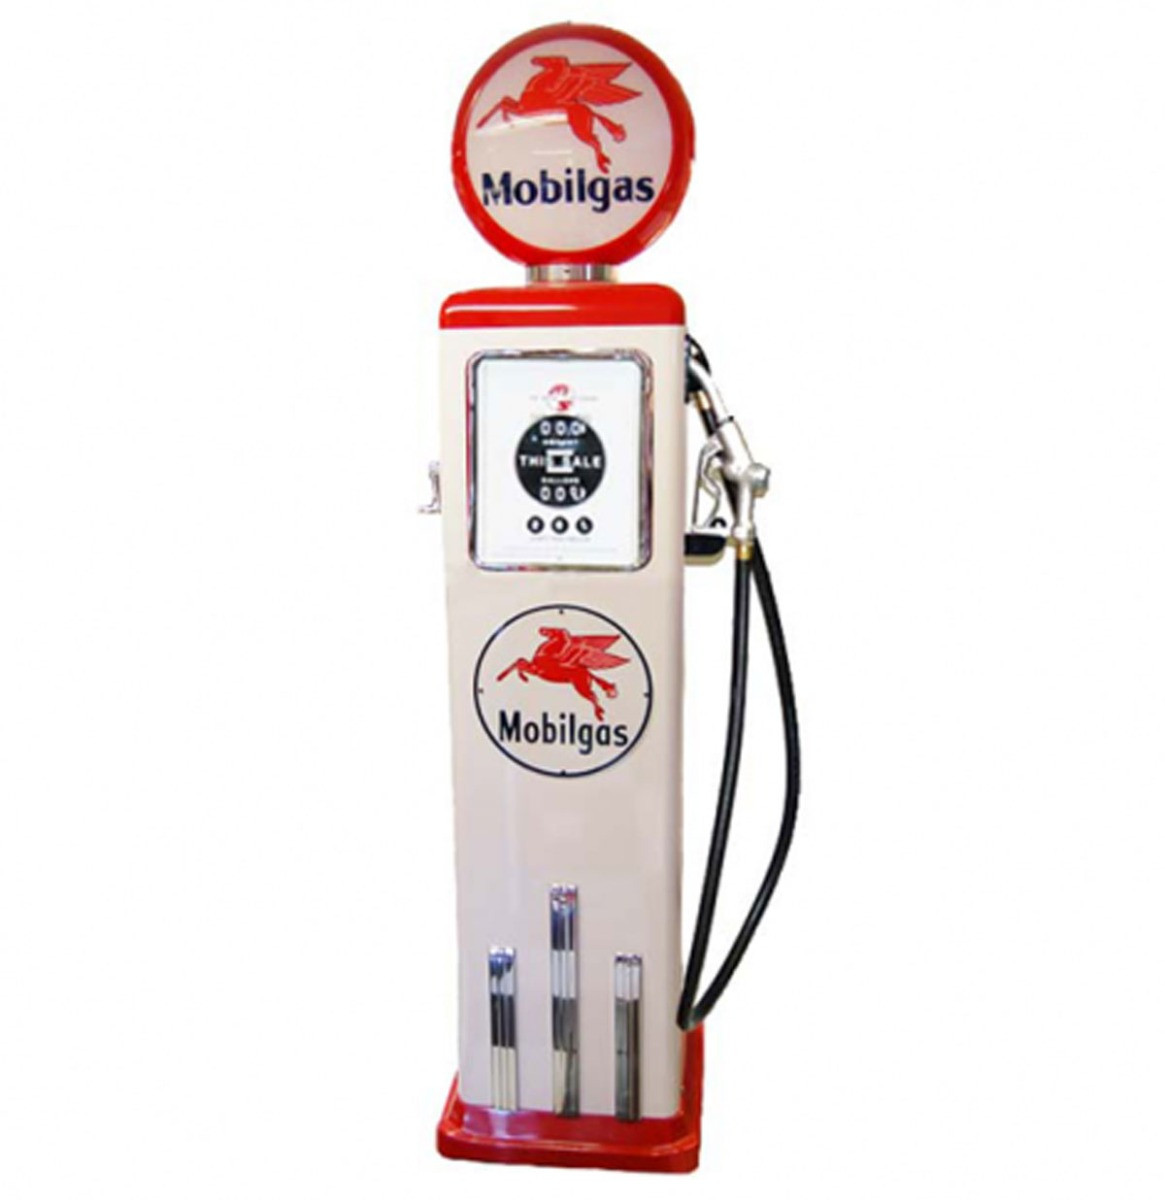 Mobilgas 8 Ball Elektrische Benzinepomp Met Voet - Rood & Wit - Reproductie